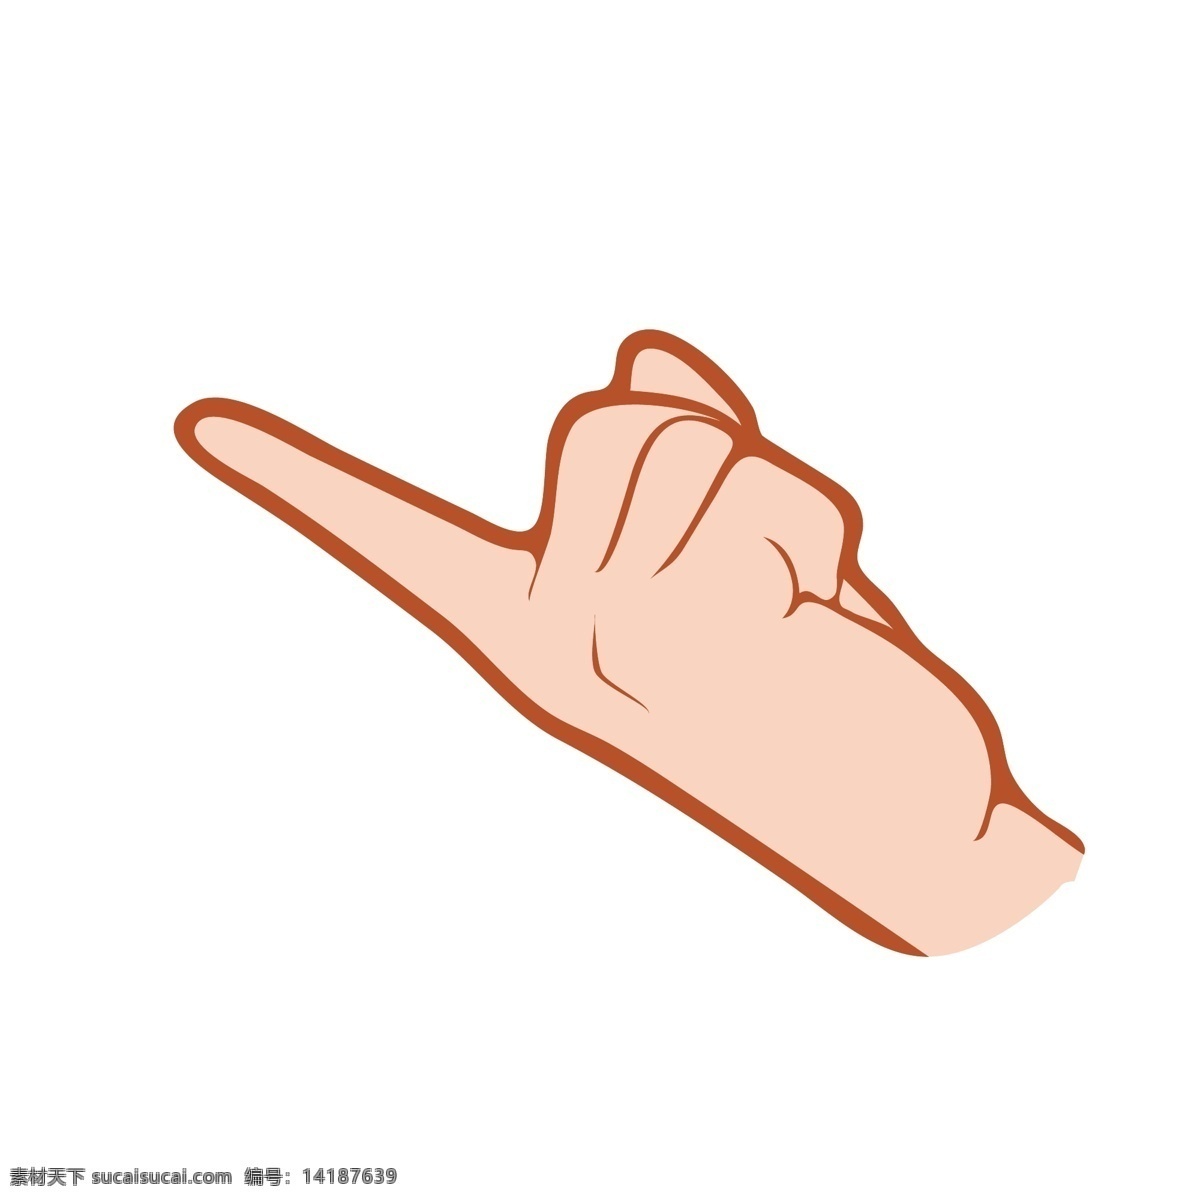 指向 手势 卡通 插画 食指的手势 卡通插画 手势的插画 摆姿势 肢体语言 手语 指向的手势